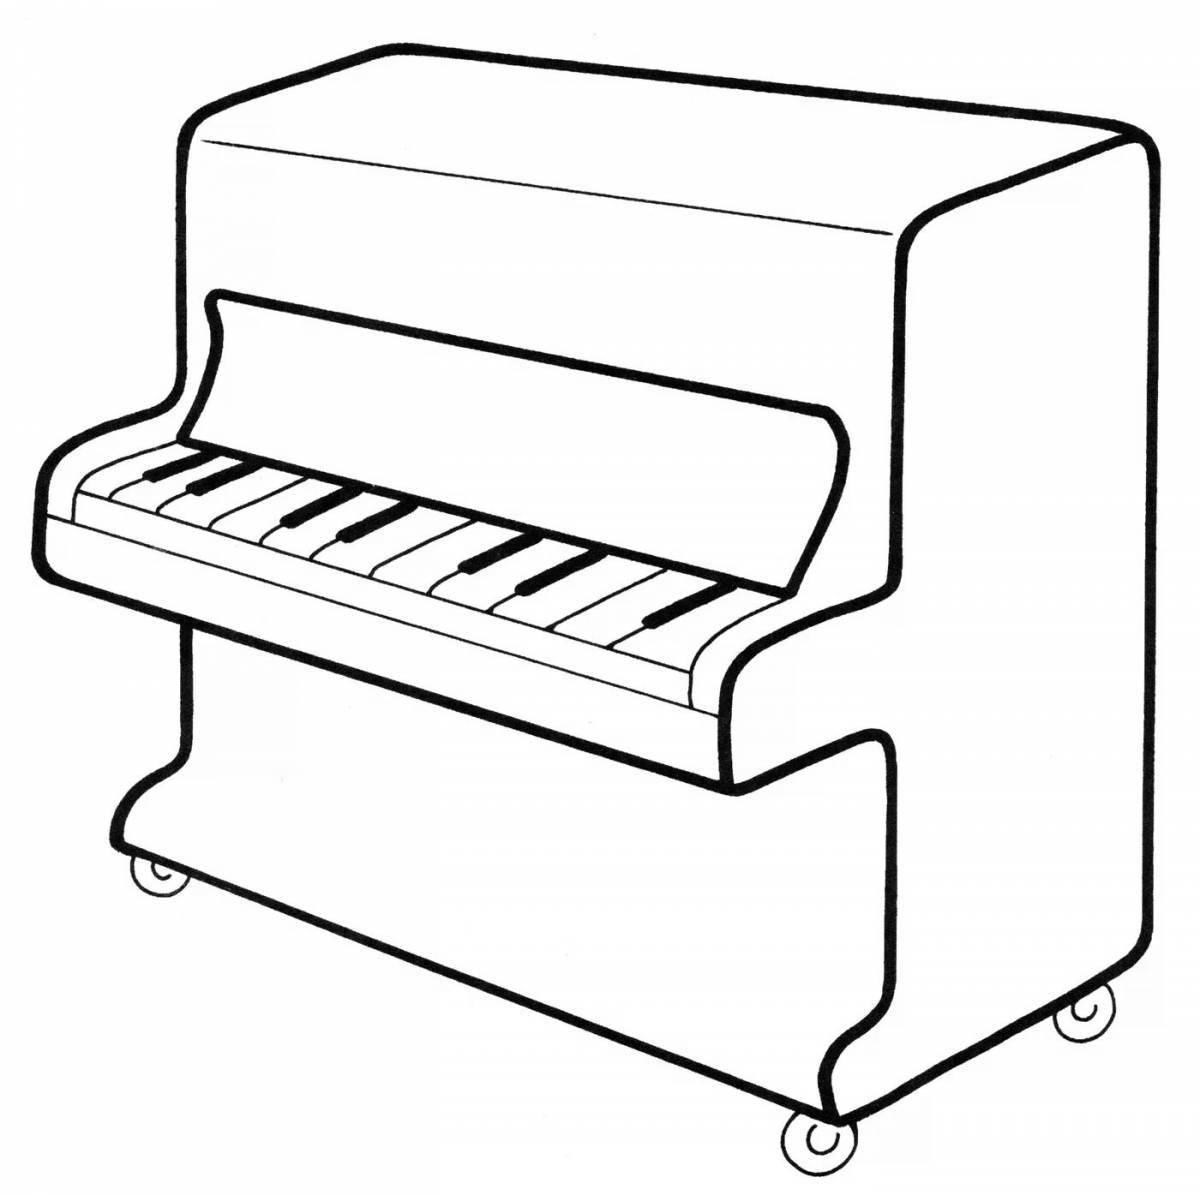 Piano #5